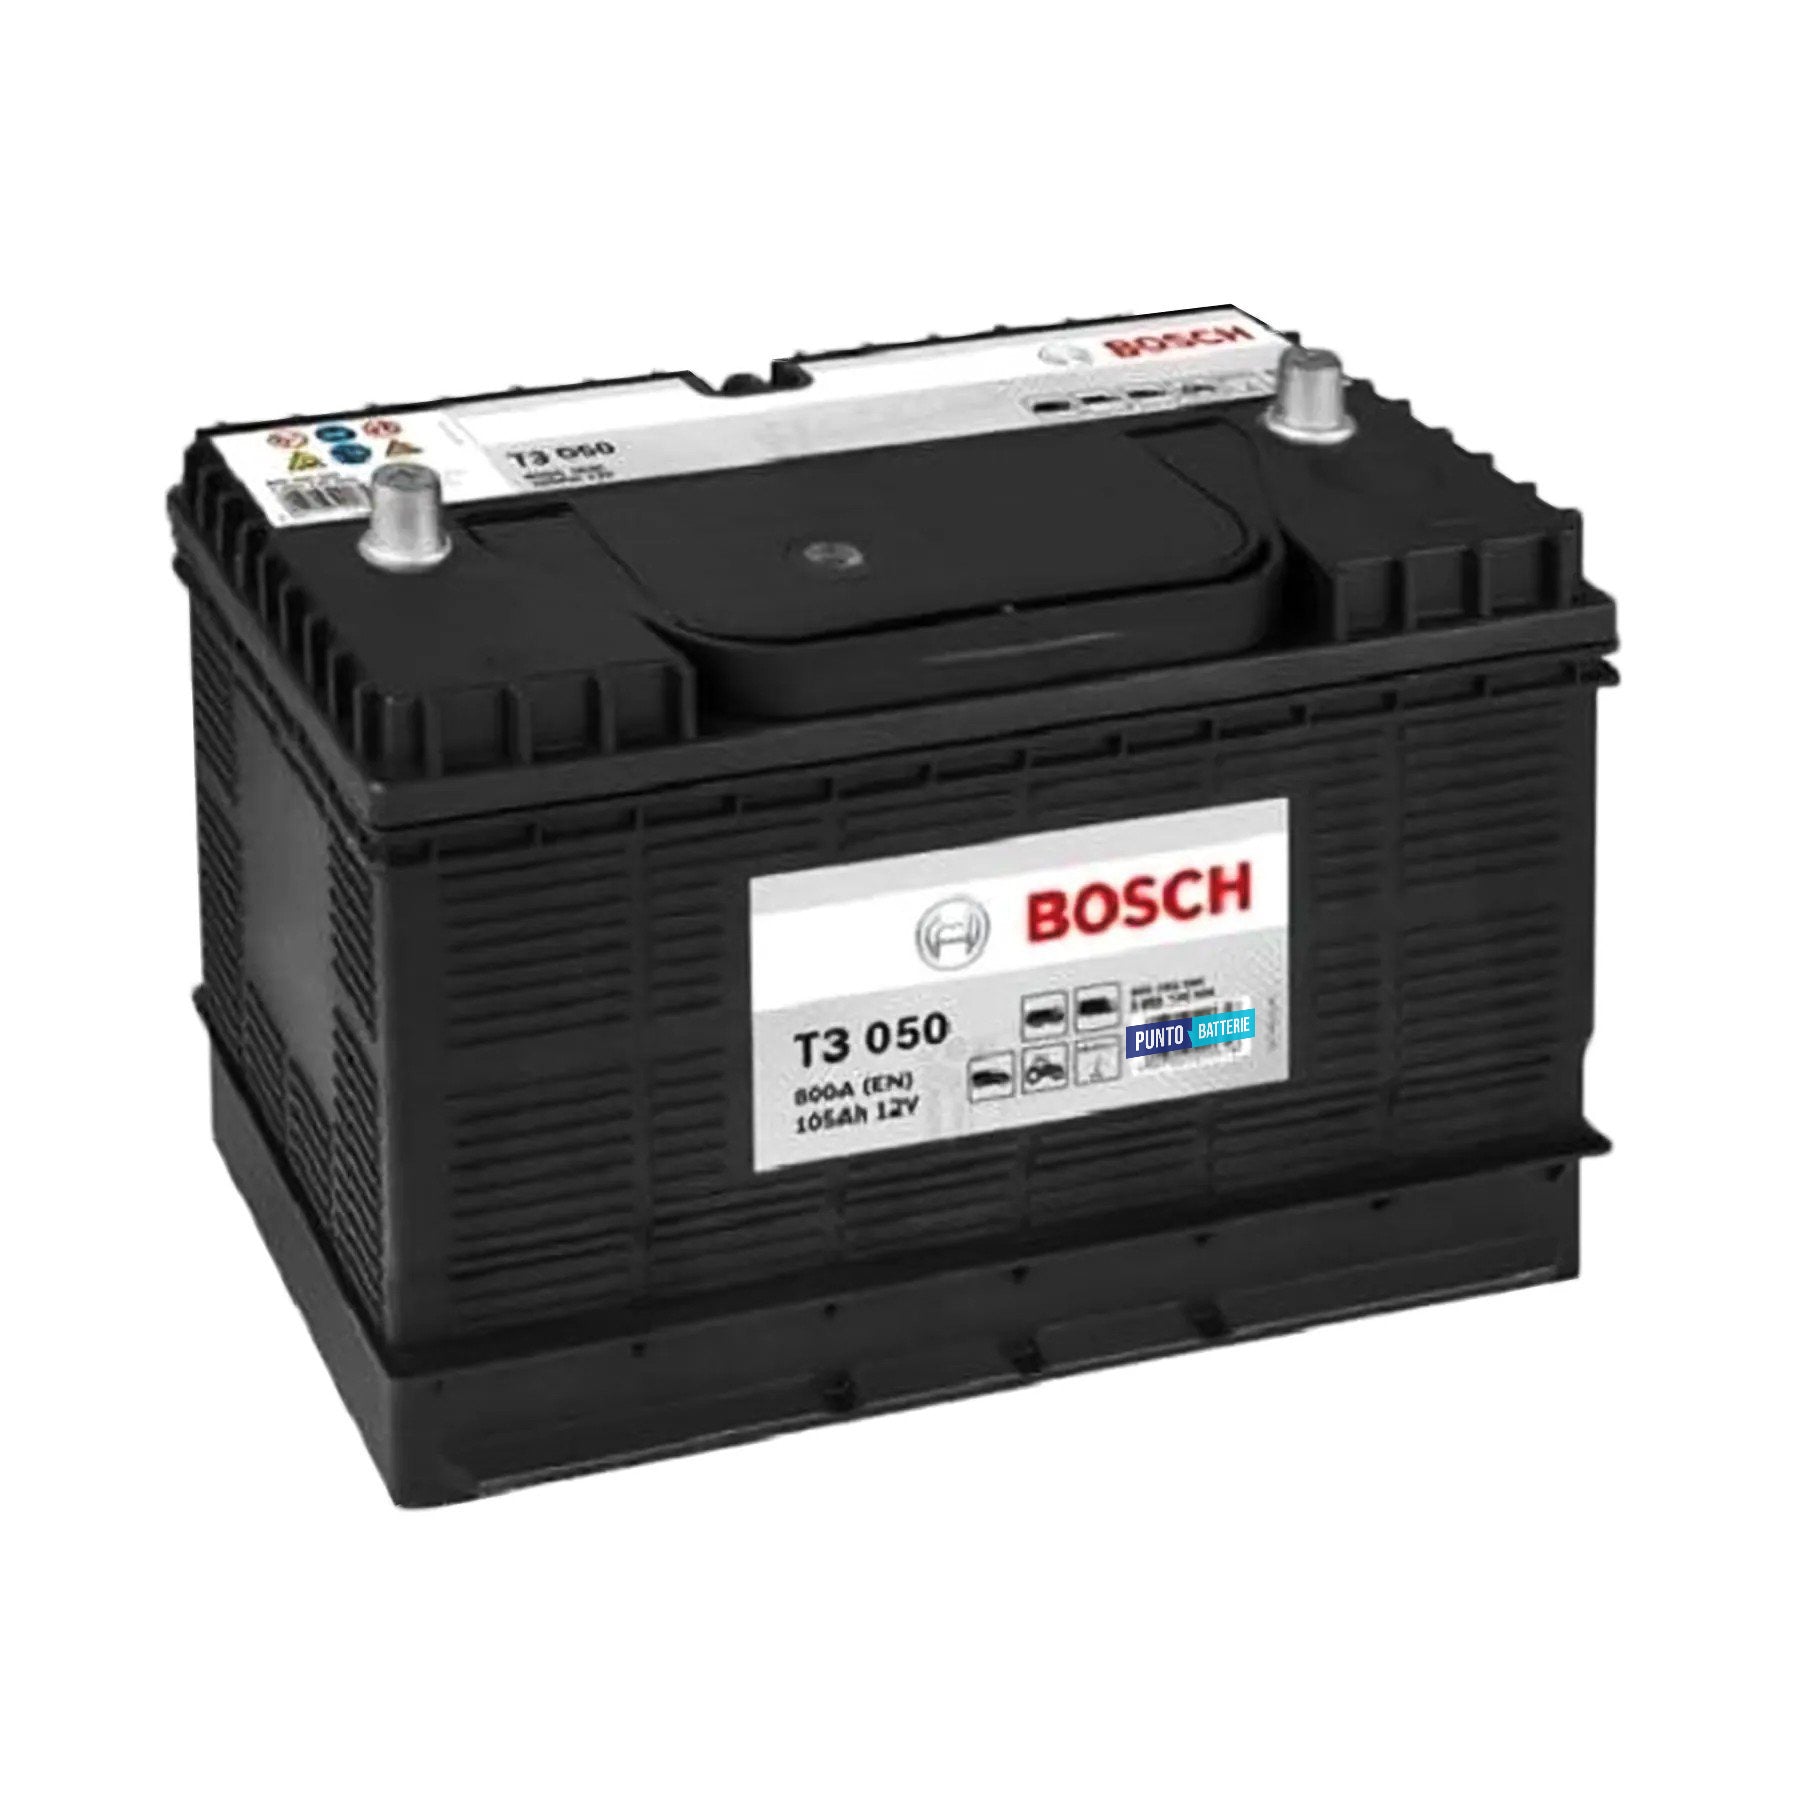 Batteria originale Bosch T3 T3050, dimensioni 329 x 172 x 237, polo positivo a sinistra, 12 volt, 105 amperora, 800 ampere. Batteria per camion e veicoli pesanti.